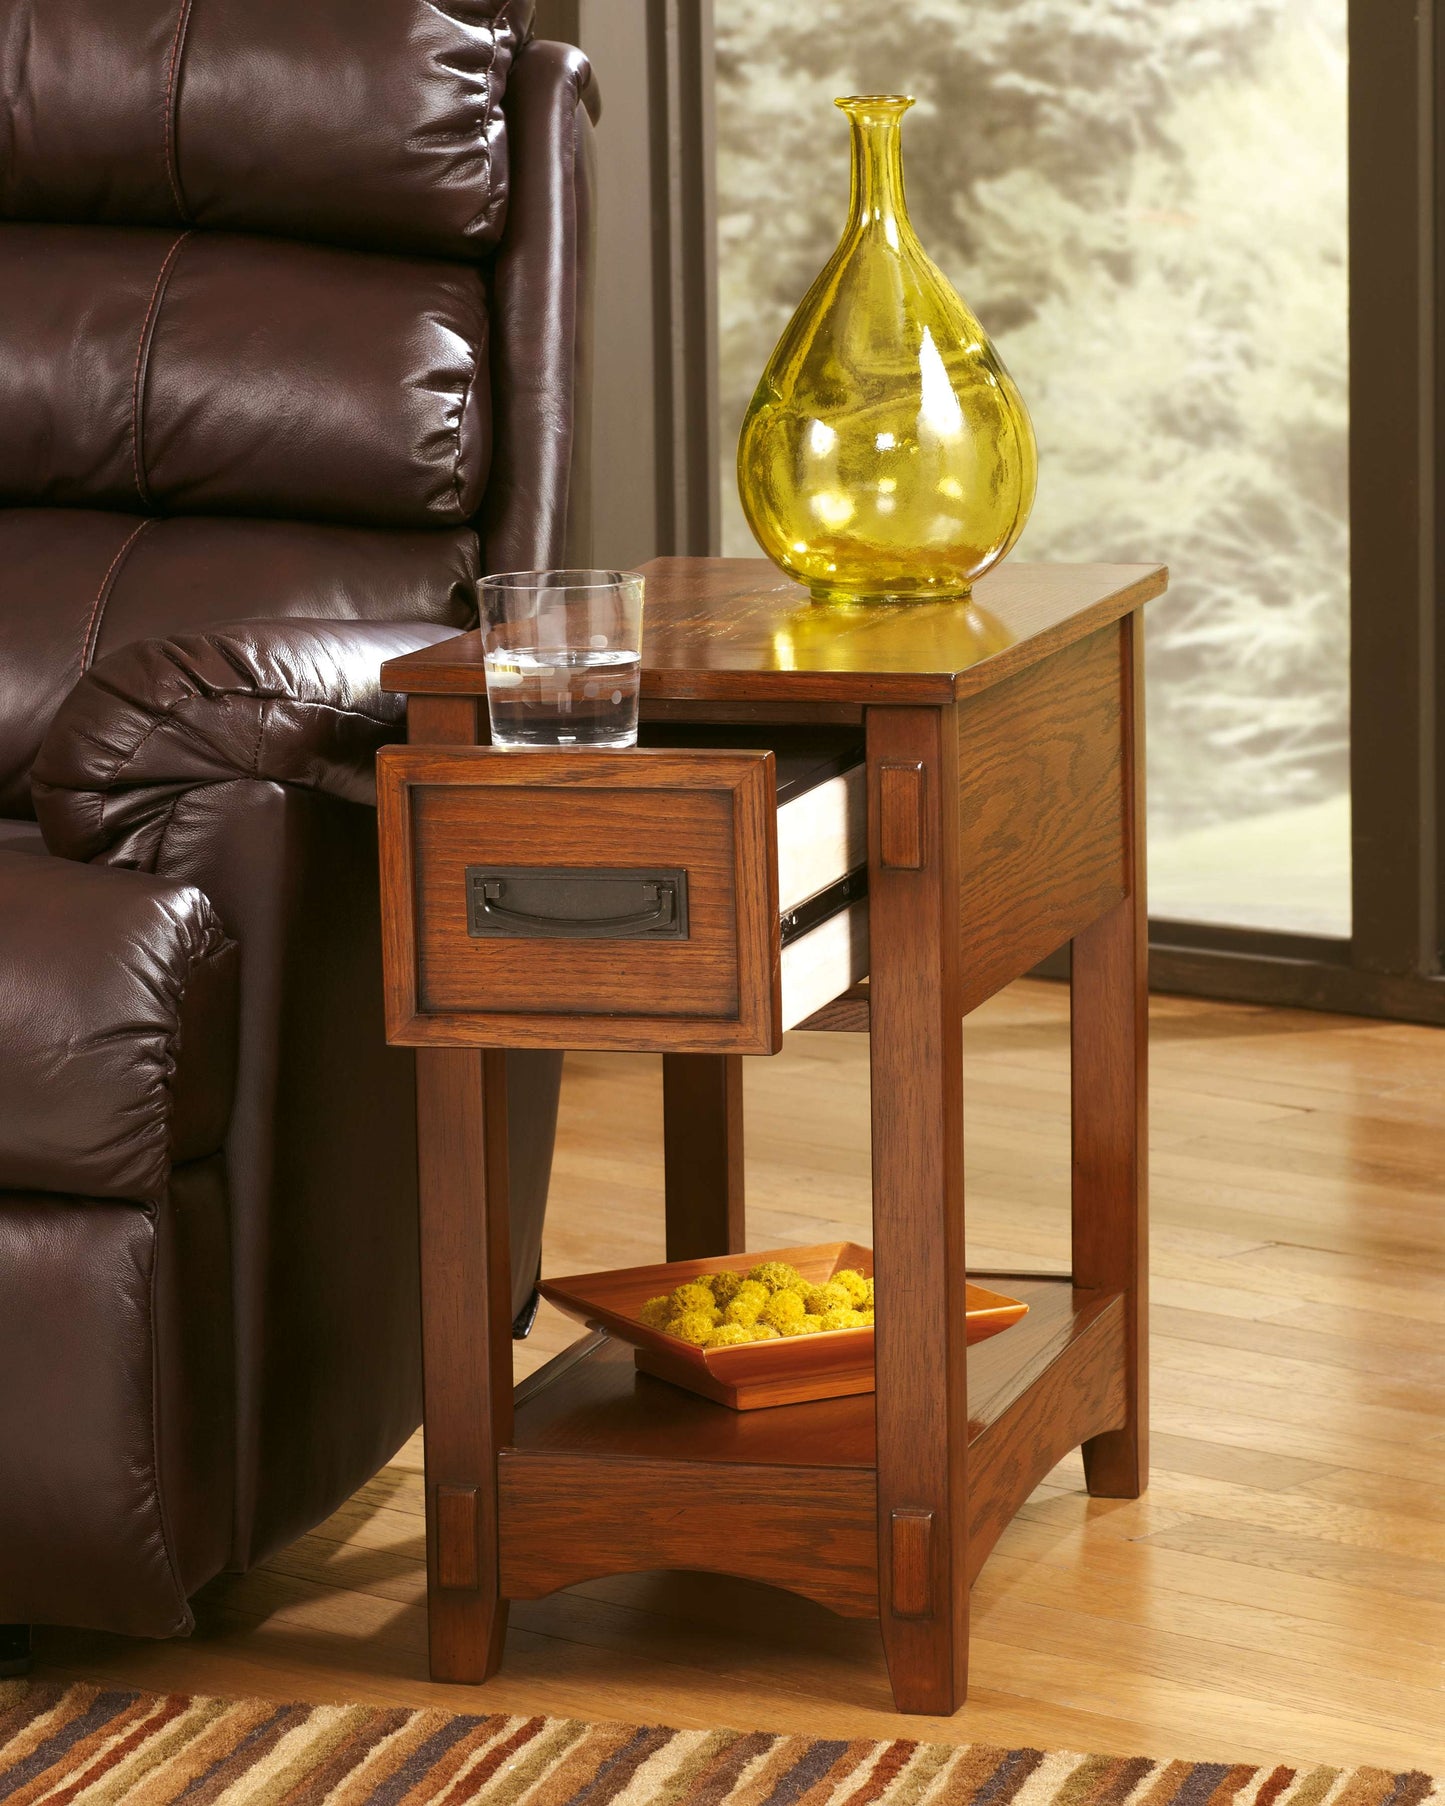 Breegin - Brown - Chair Side End Table - Medium